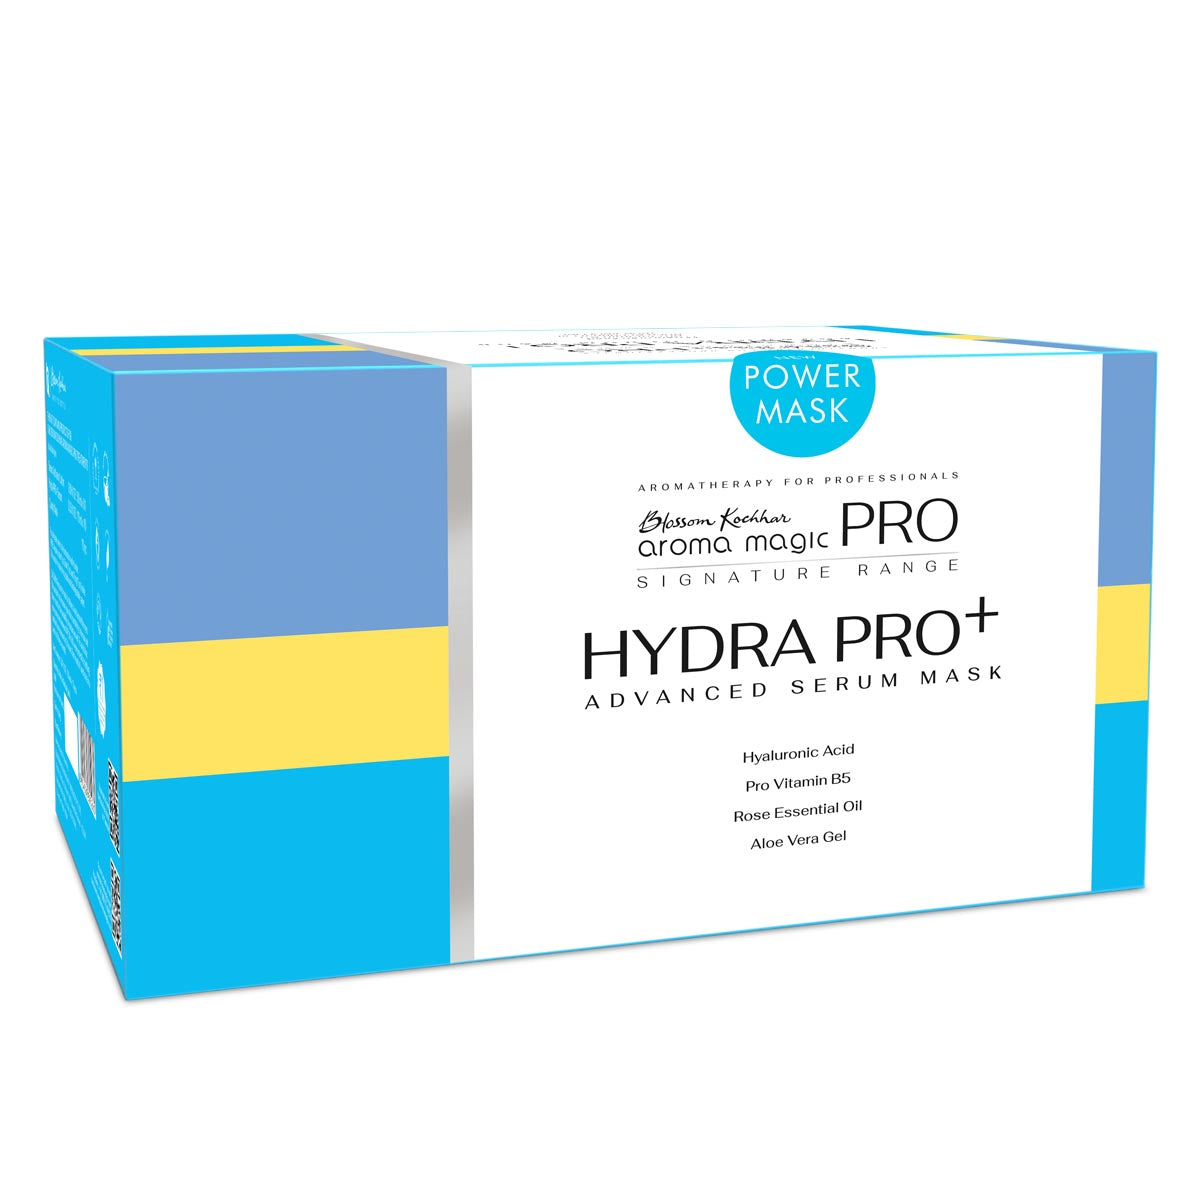 Hydra Pro Advanced Serum Mask Kit